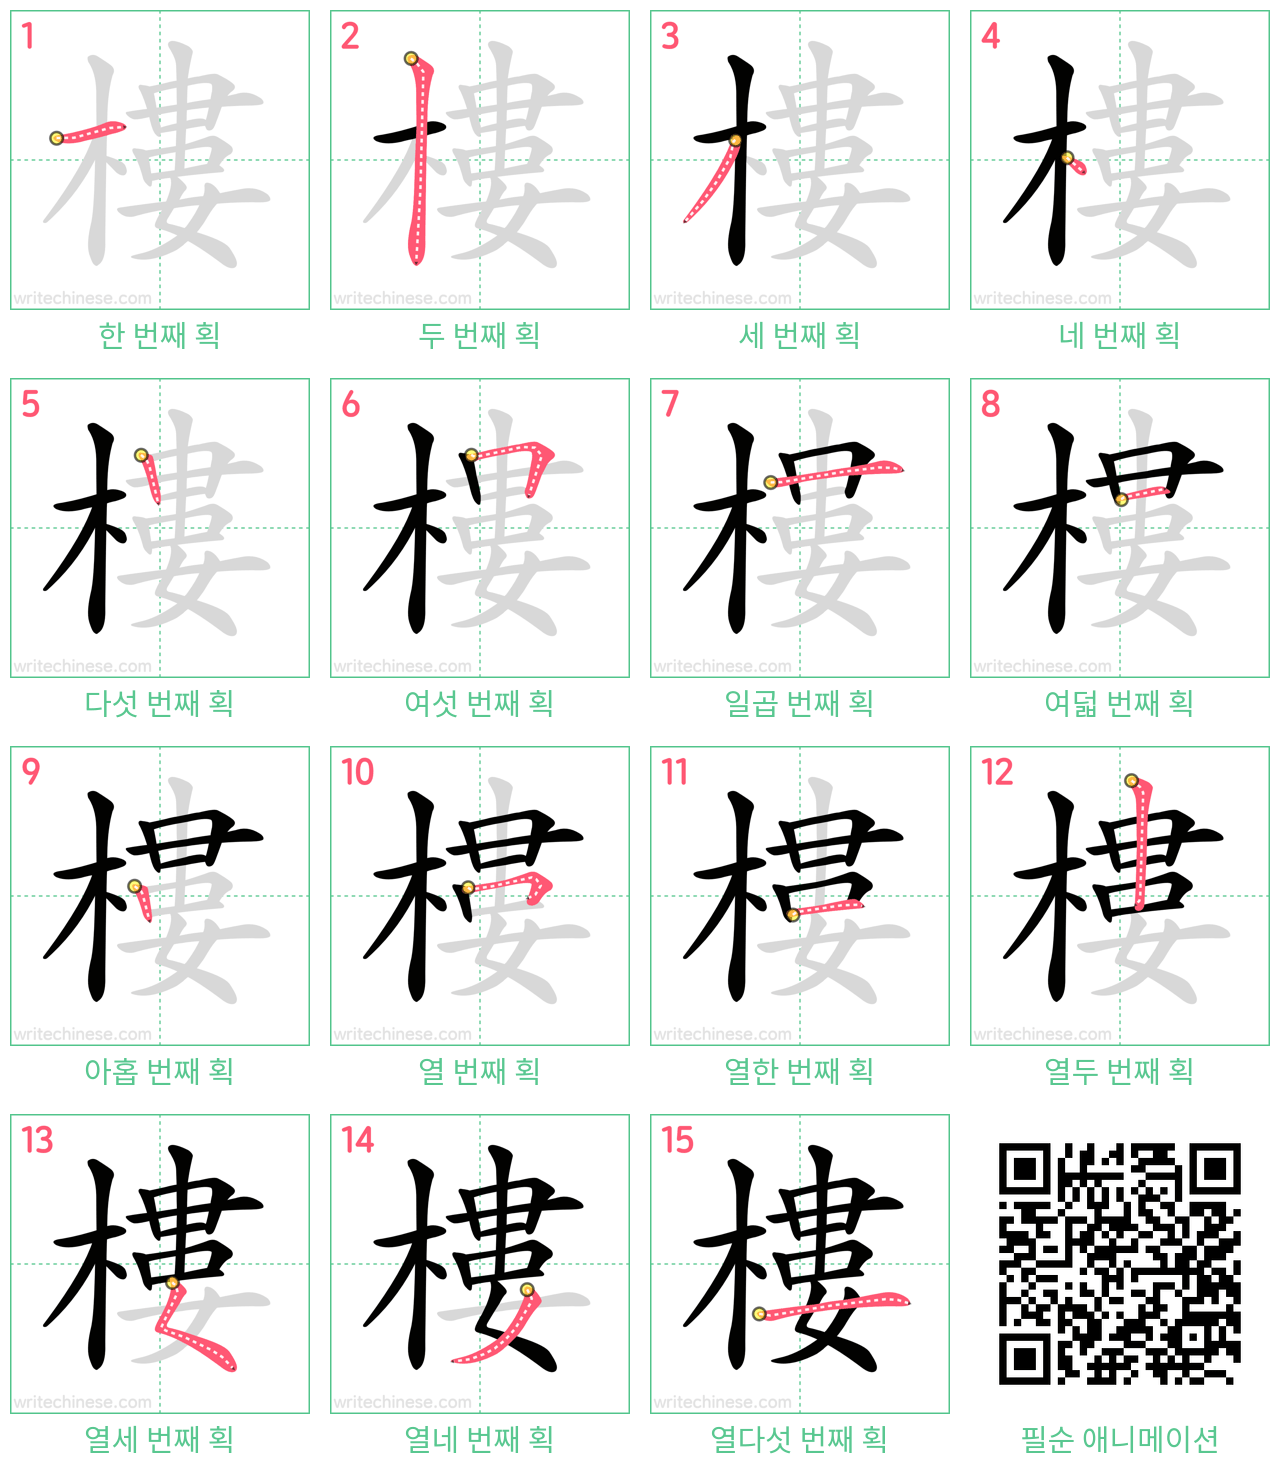 樓 step-by-step stroke order diagrams